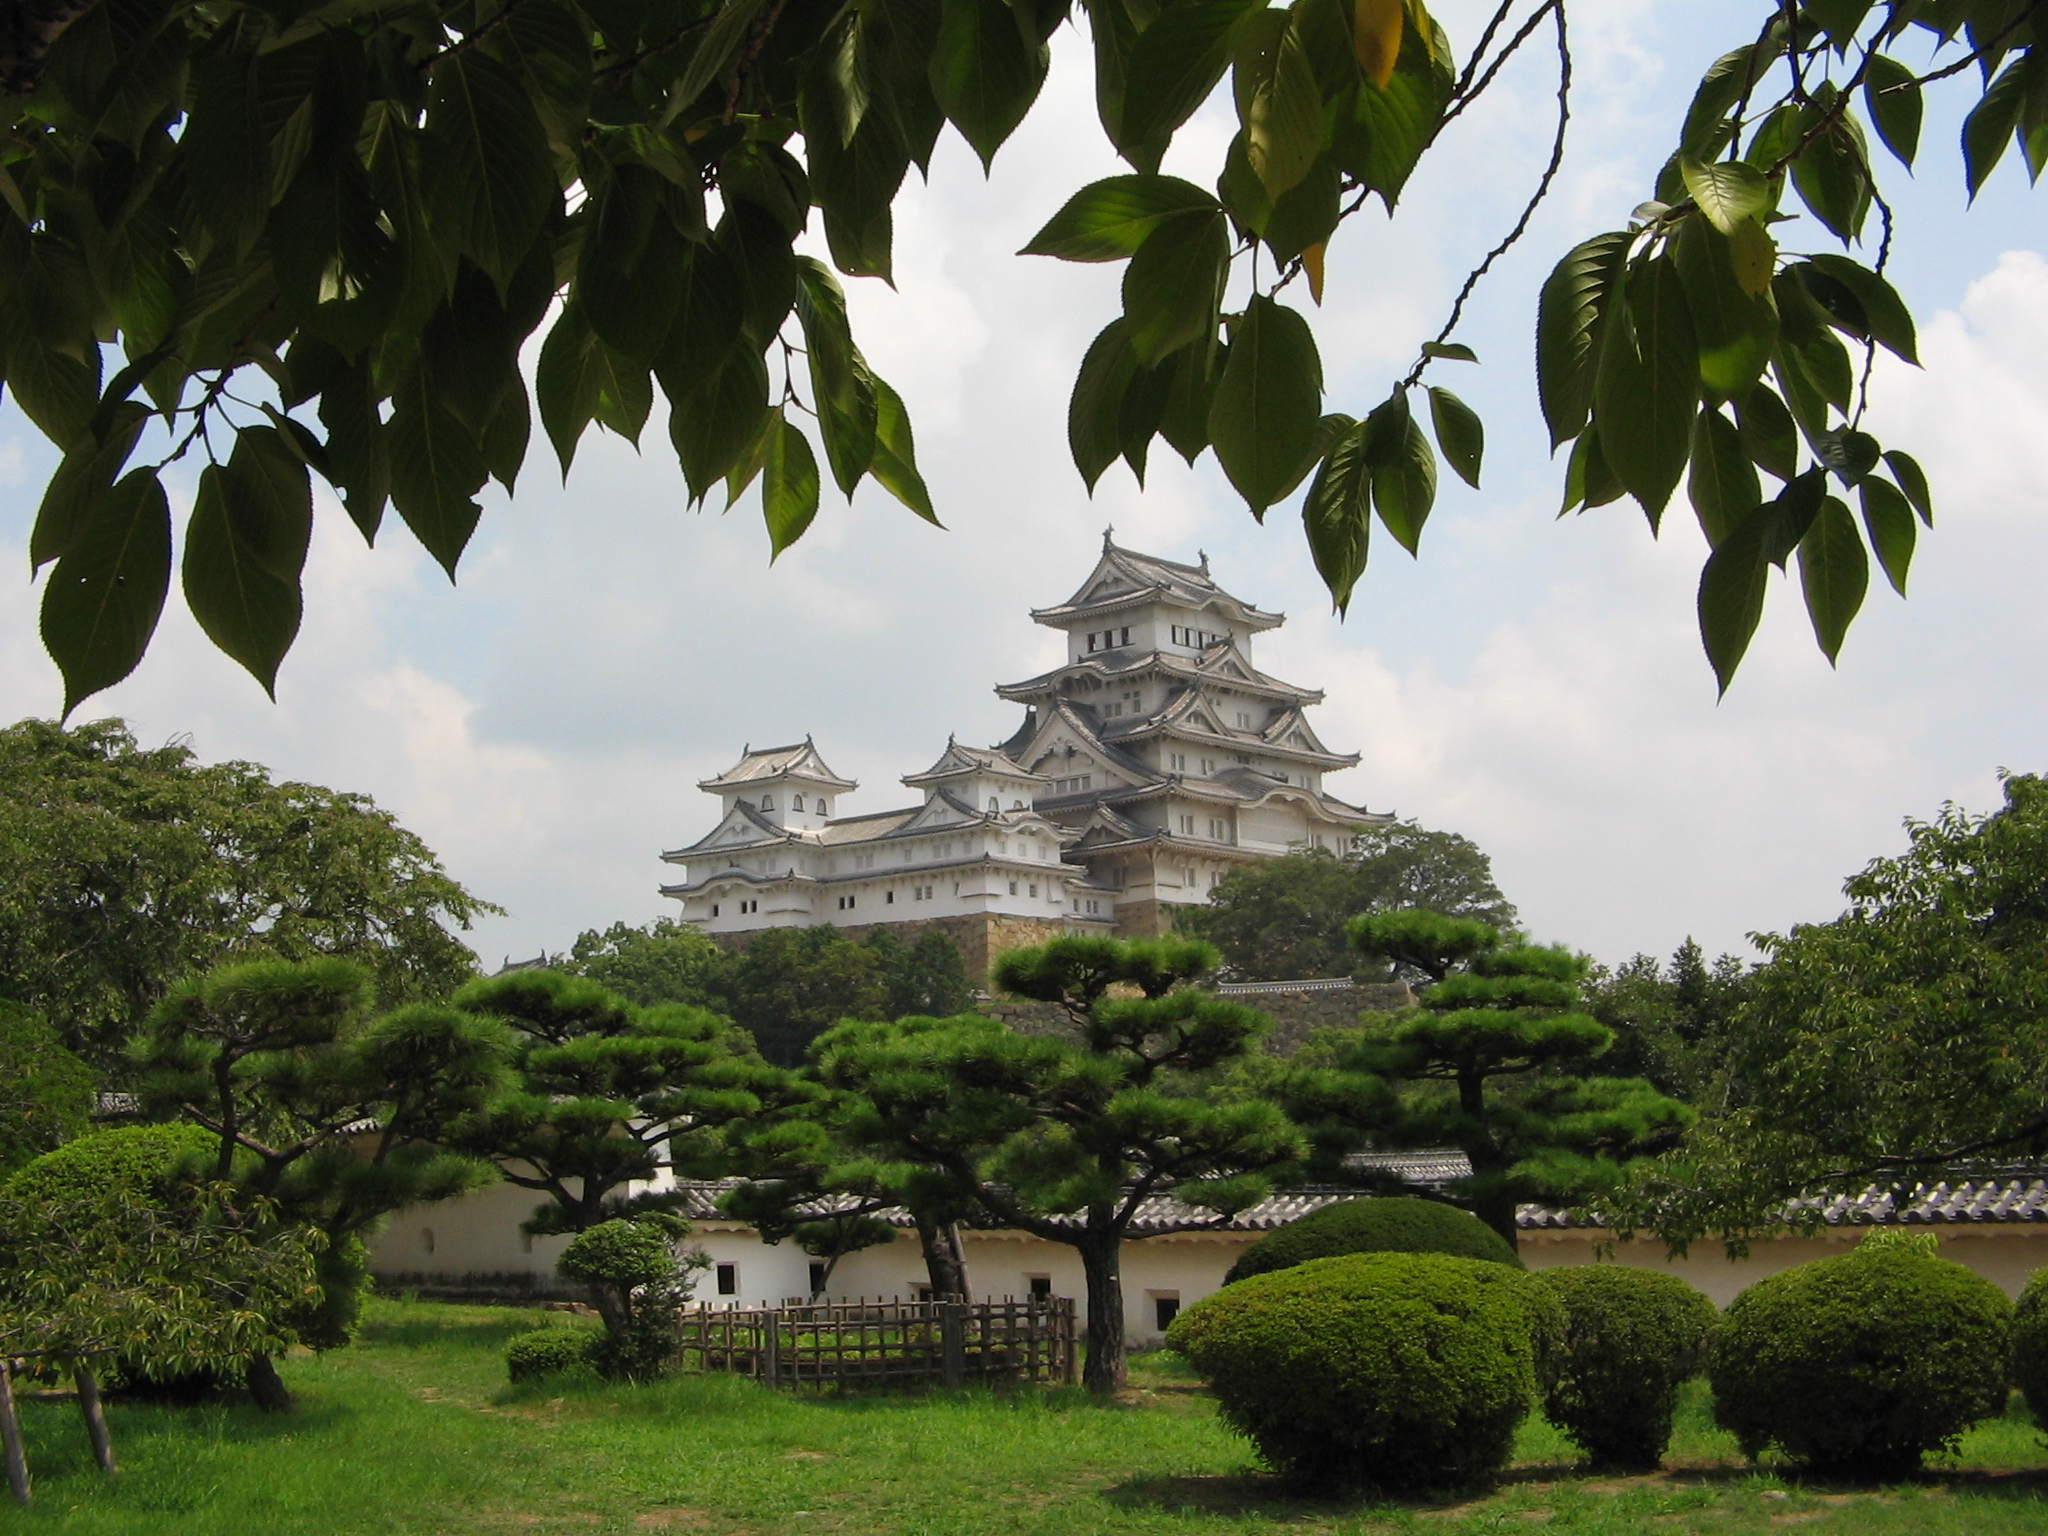 قلعة هيميجي الأكبر فى اليابان